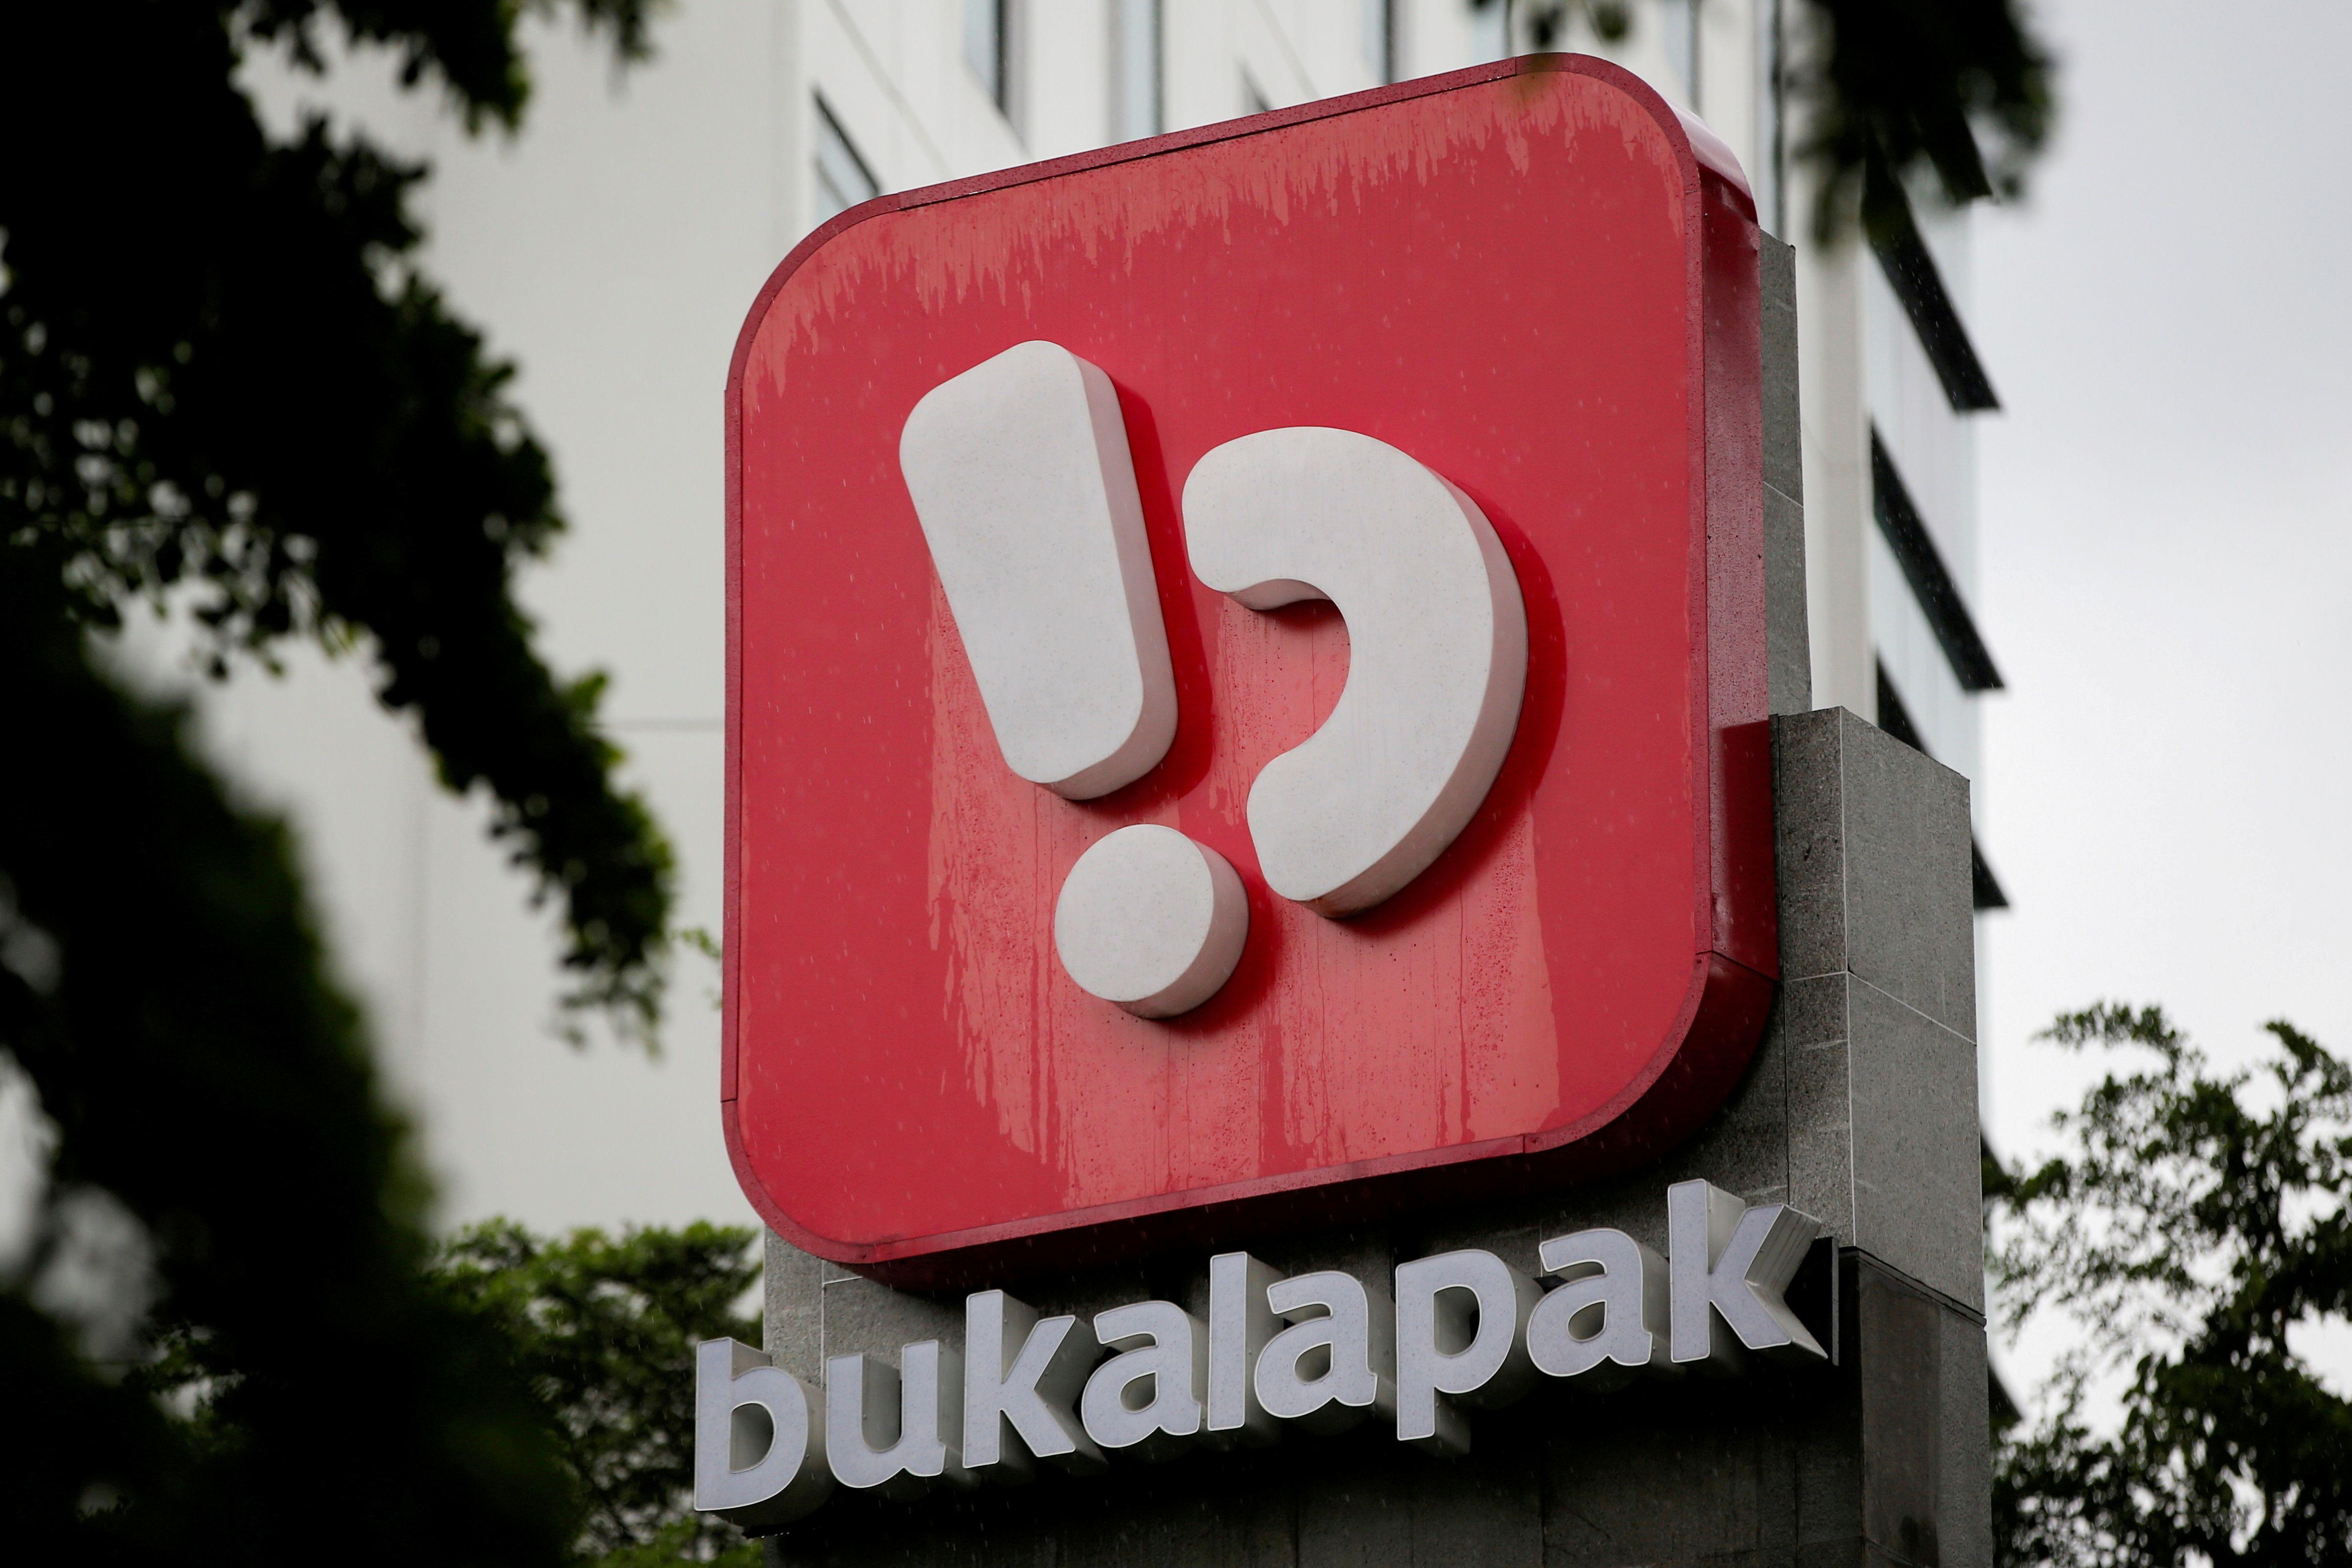 bukalapak Logo - Indonesian blockbuster IPO to set tone ...